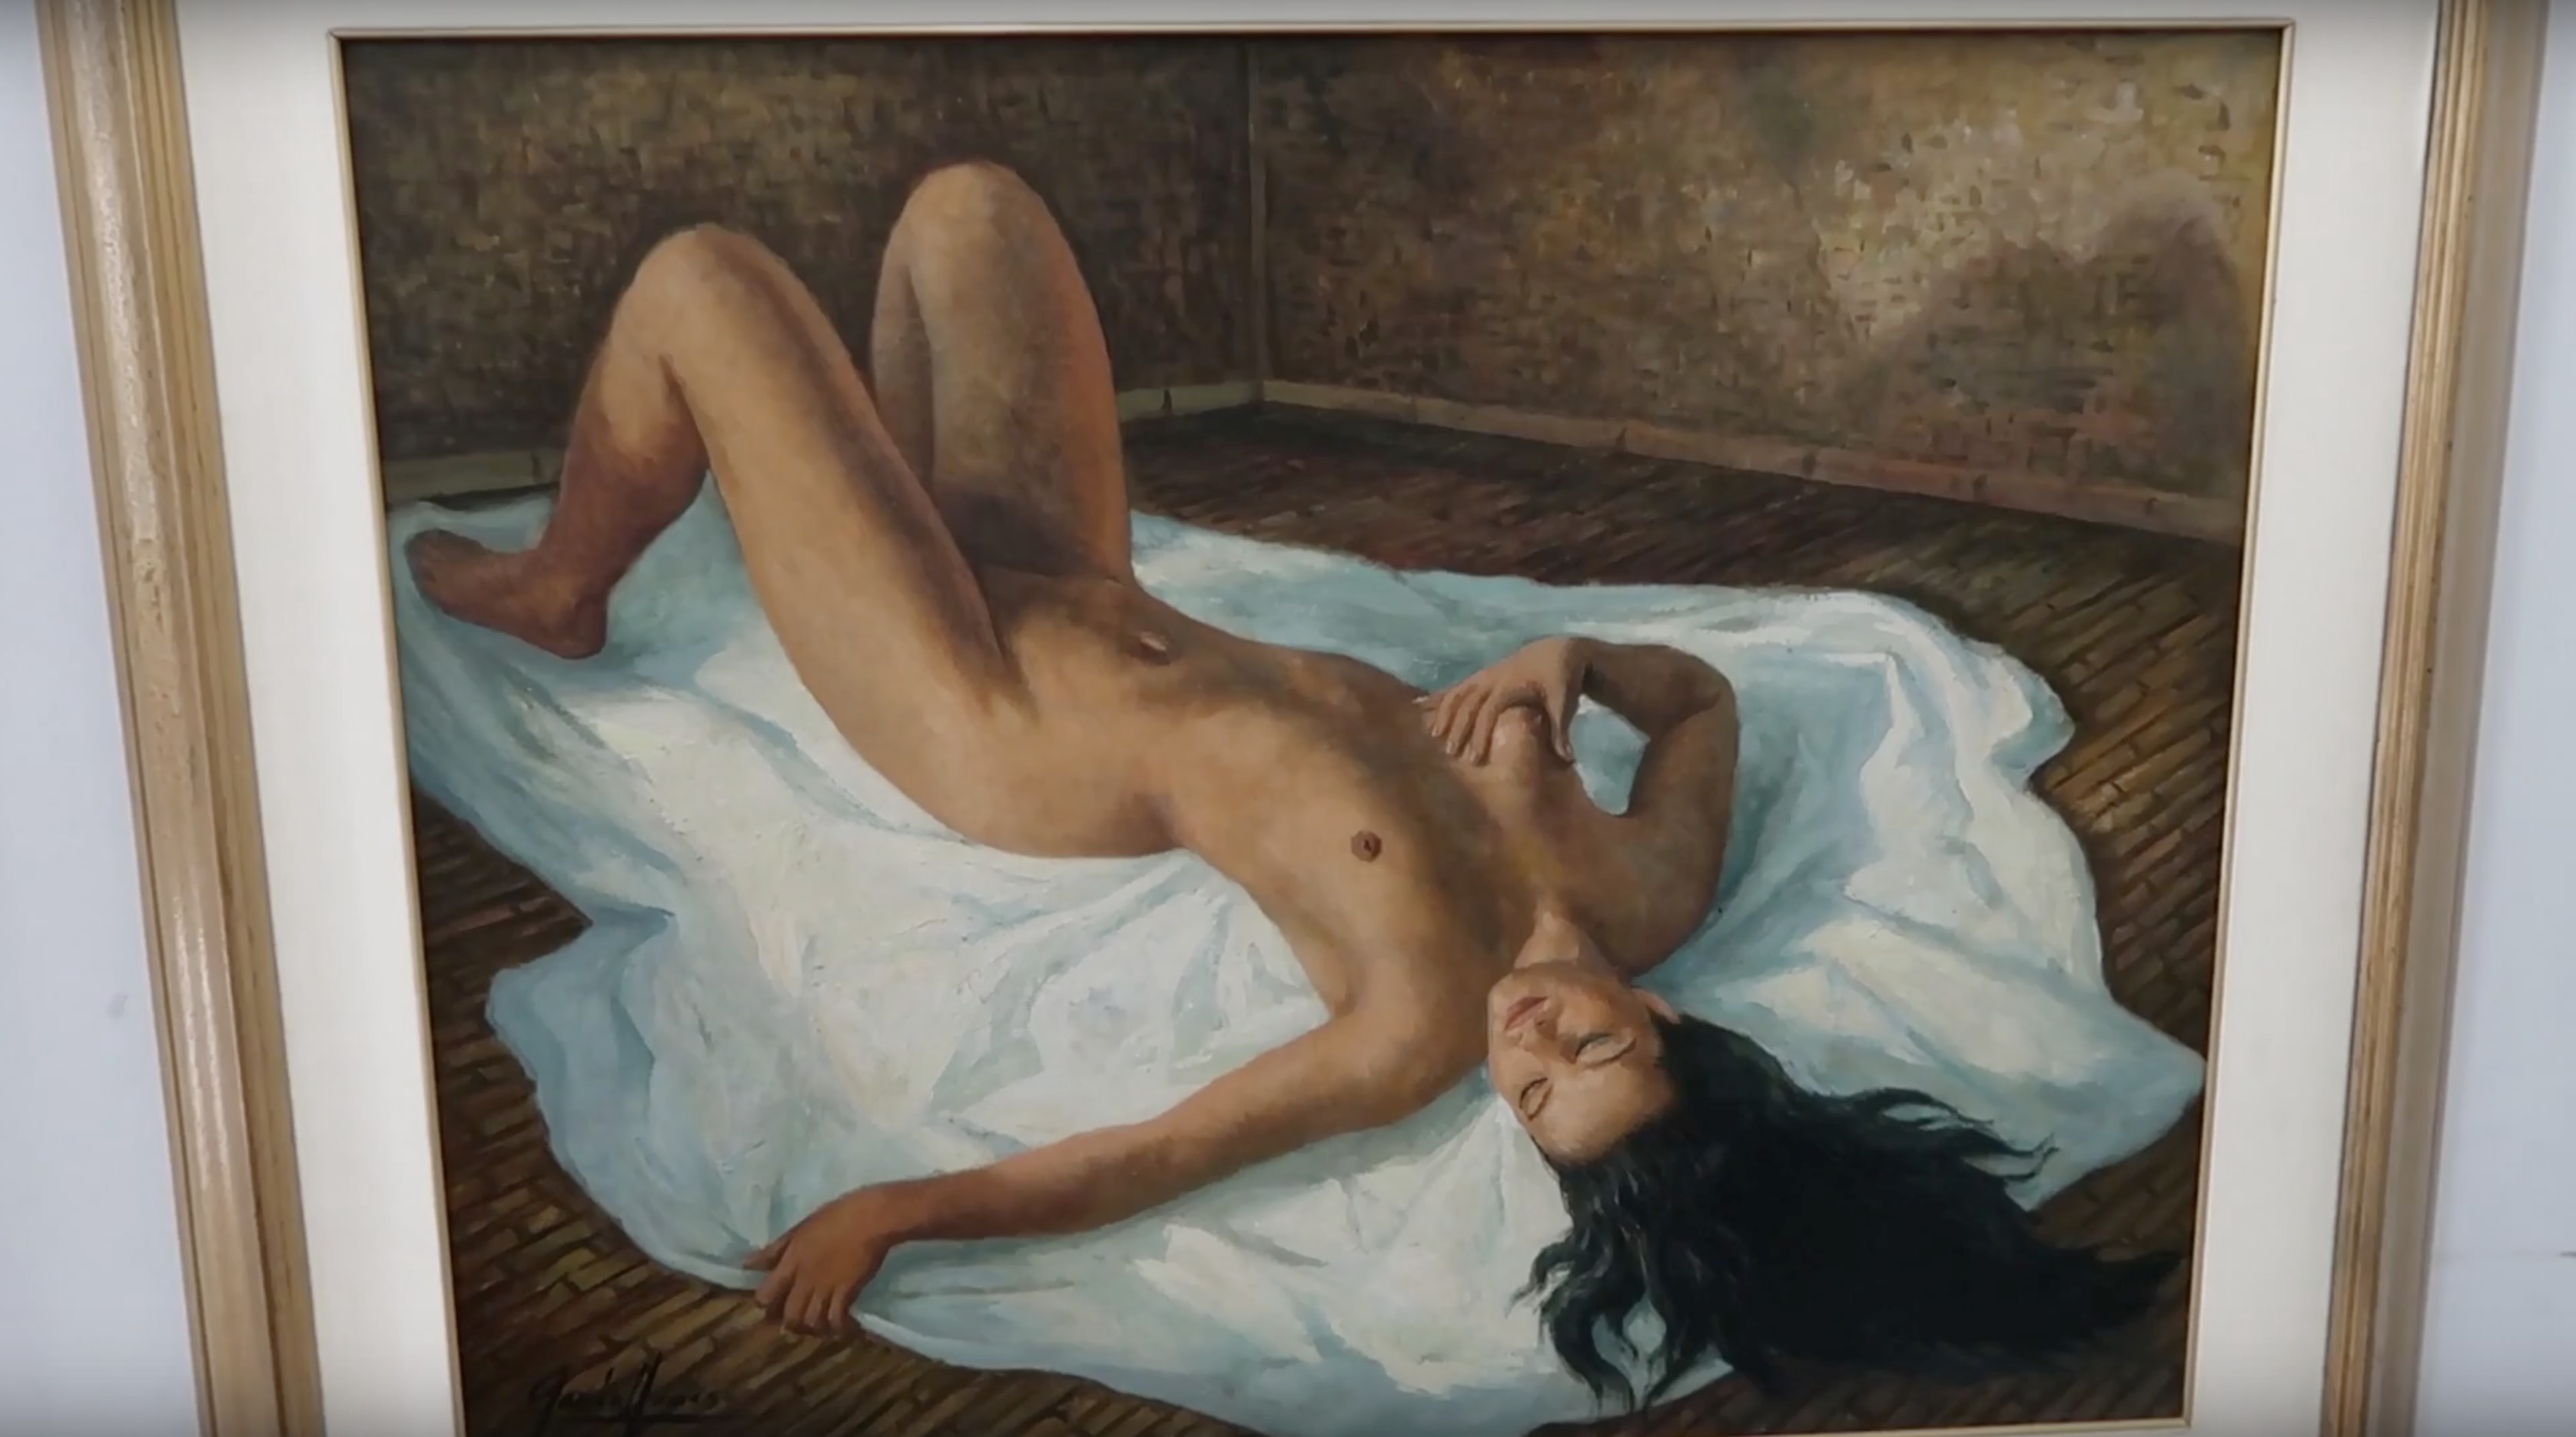 erotic painting in erotica gallery in bencab museum baguio city